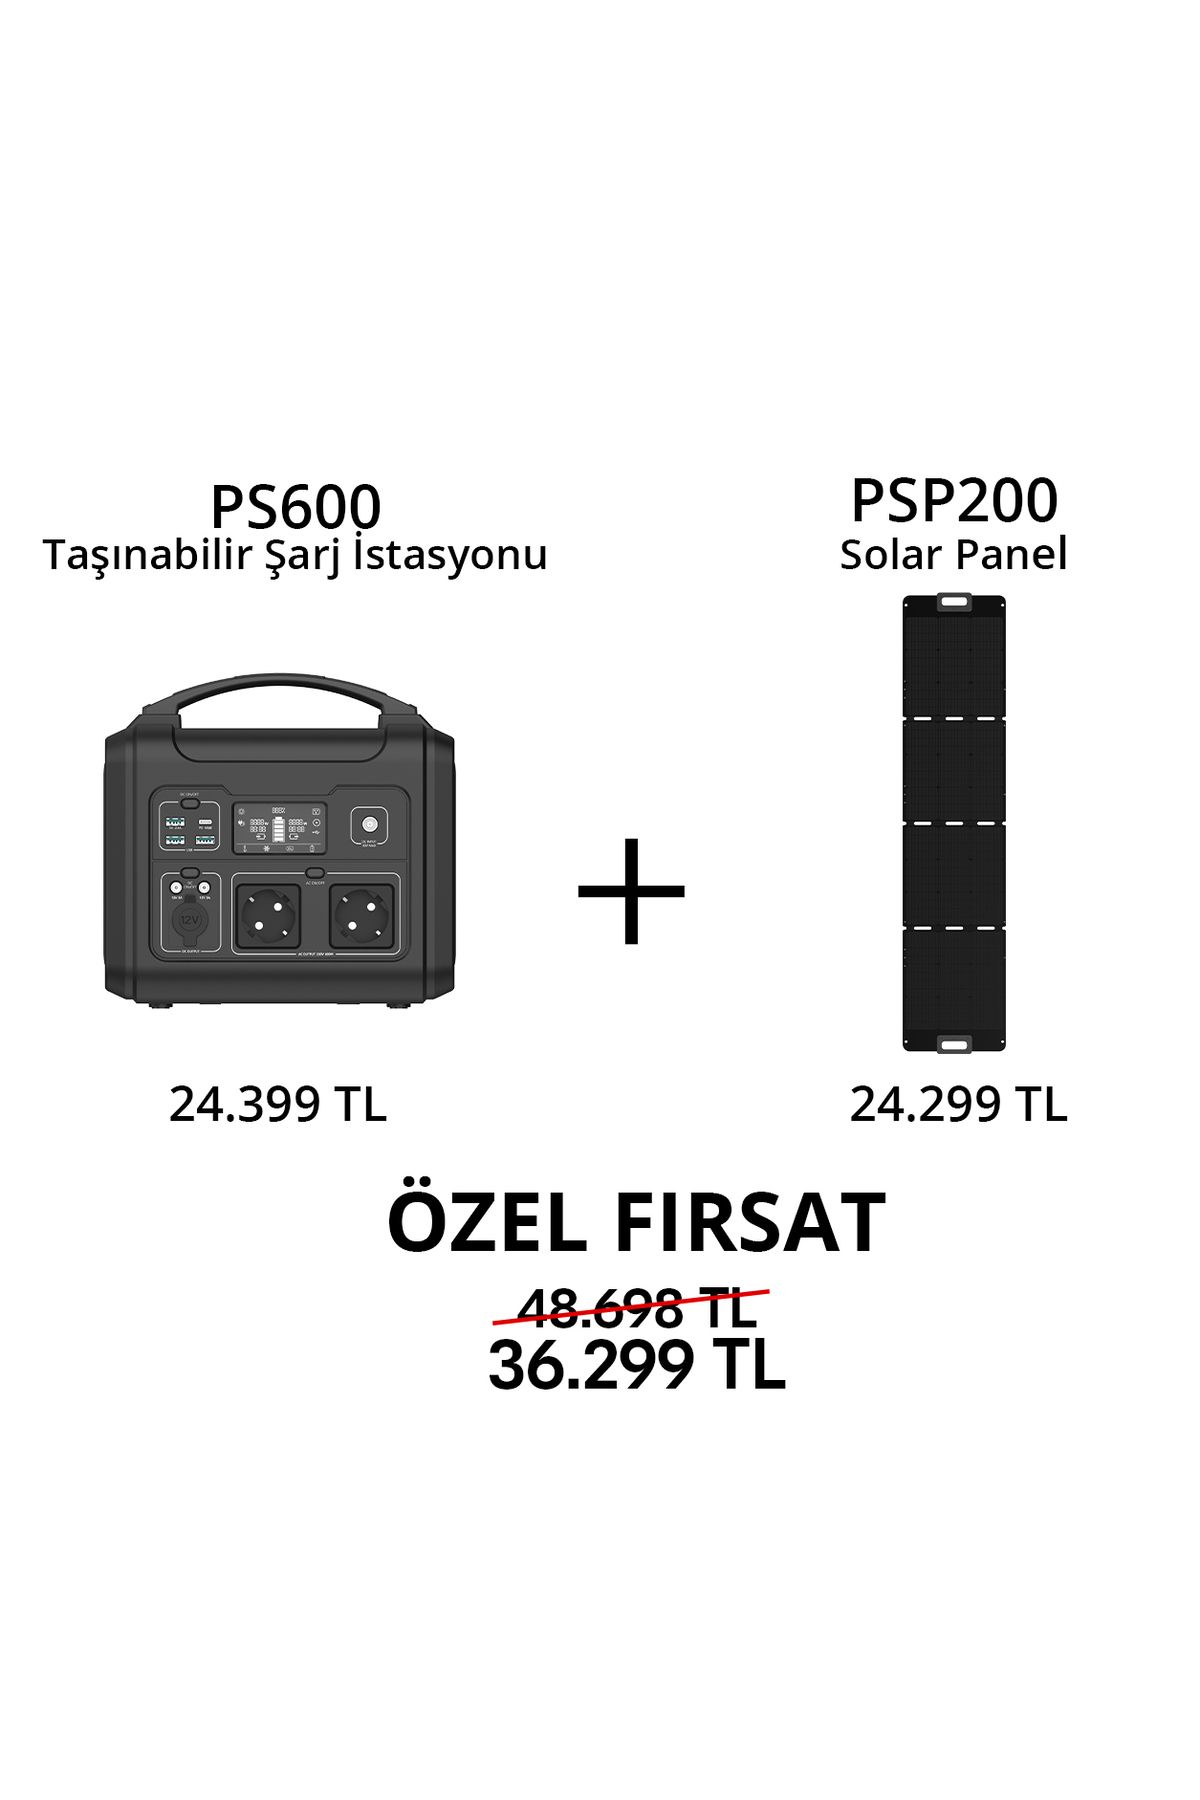 EZVIZ PS600 Taşınabilir Şarj İstasyonu ve PSP200 Solar Panel